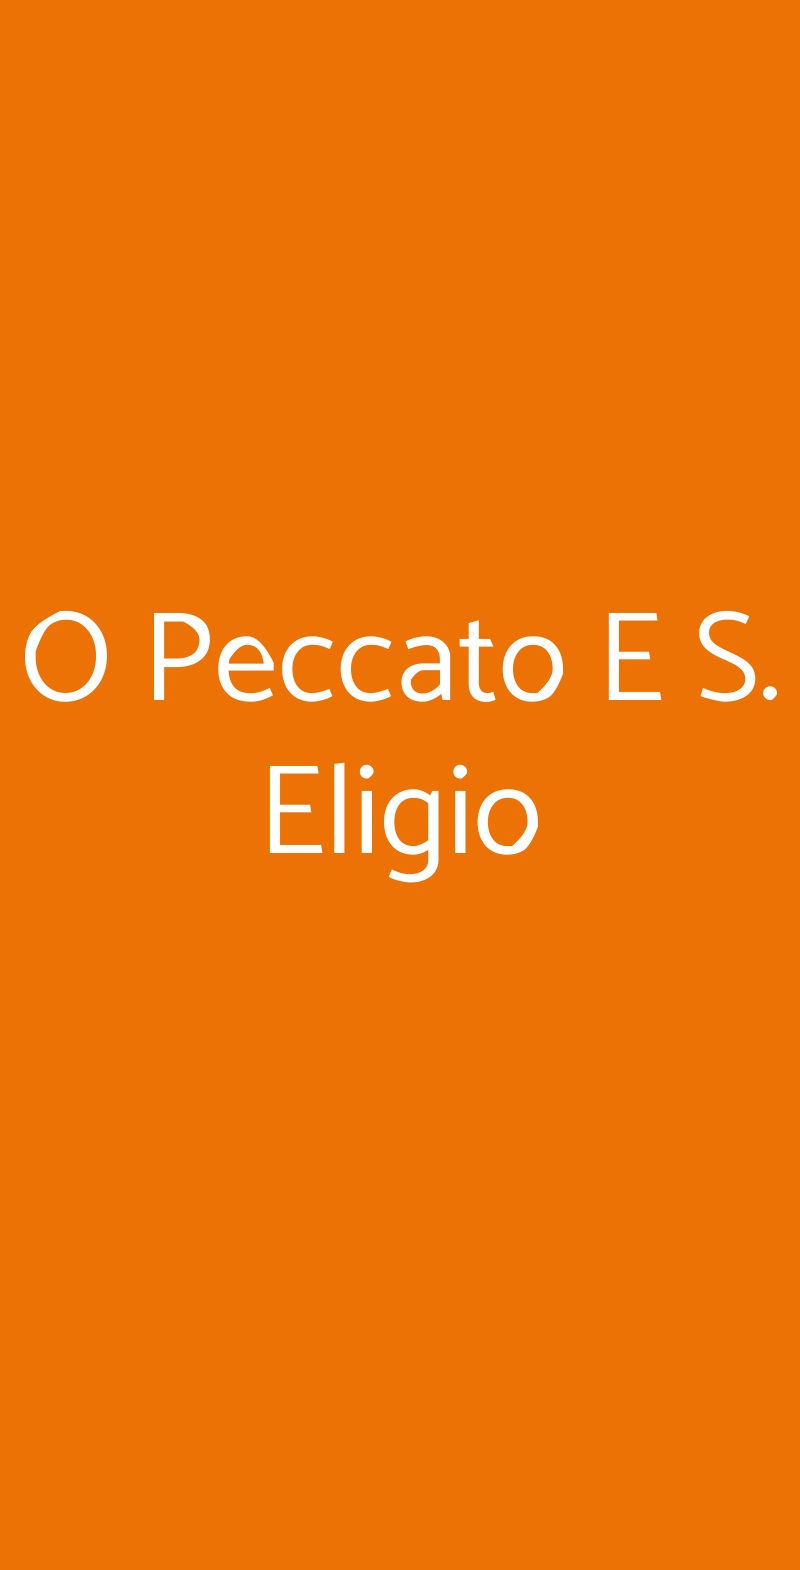 O Peccato E S. Eligio Napoli menù 1 pagina